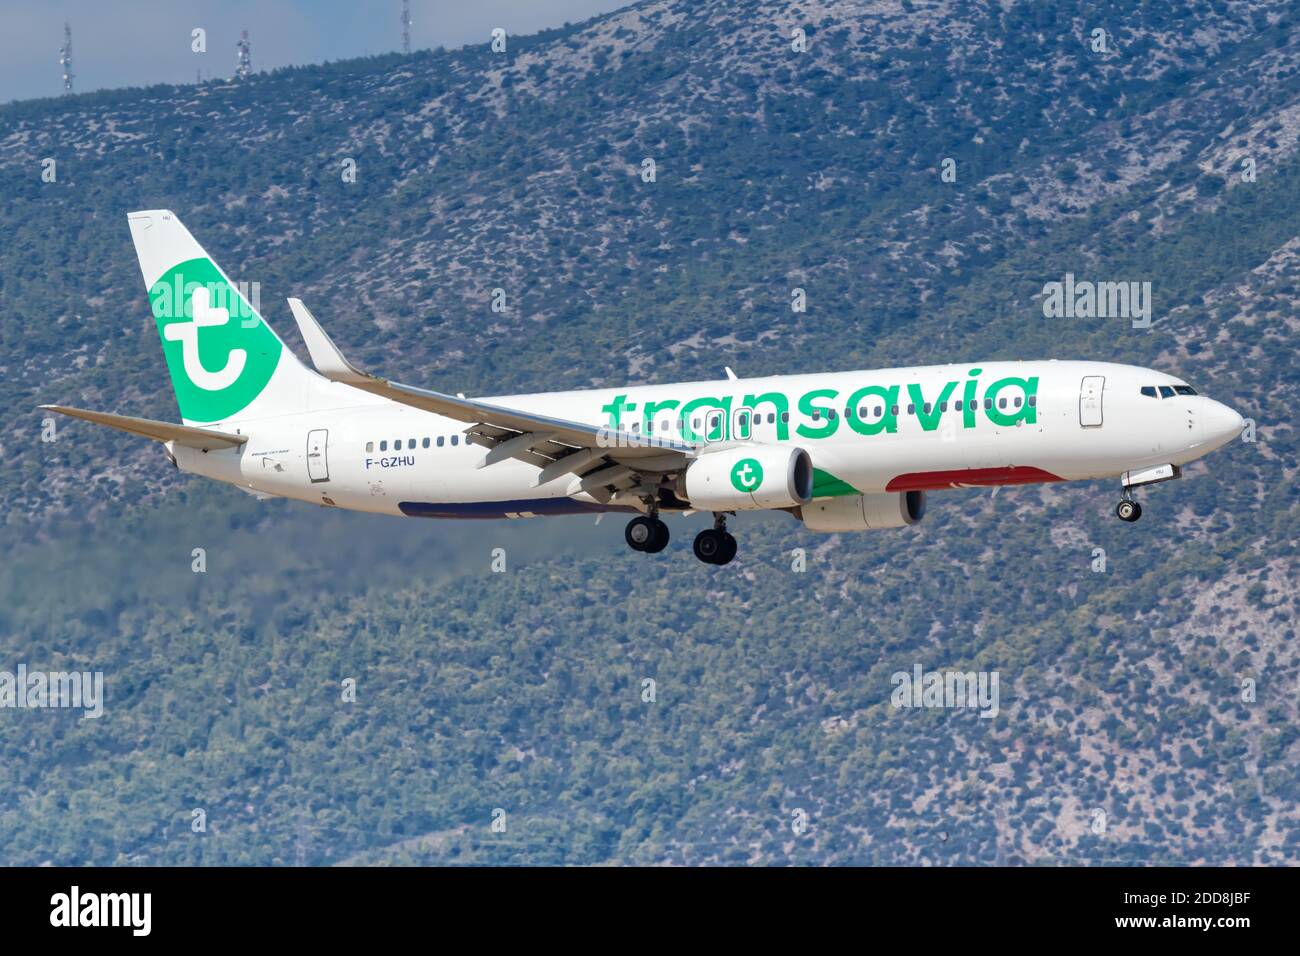 Atene, Grecia - 22 settembre 2020: Transavia Boeing 737-800 aereo all'aeroporto di Atene in Grecia. Boeing è un produttore americano di aeromobili headqu Foto Stock